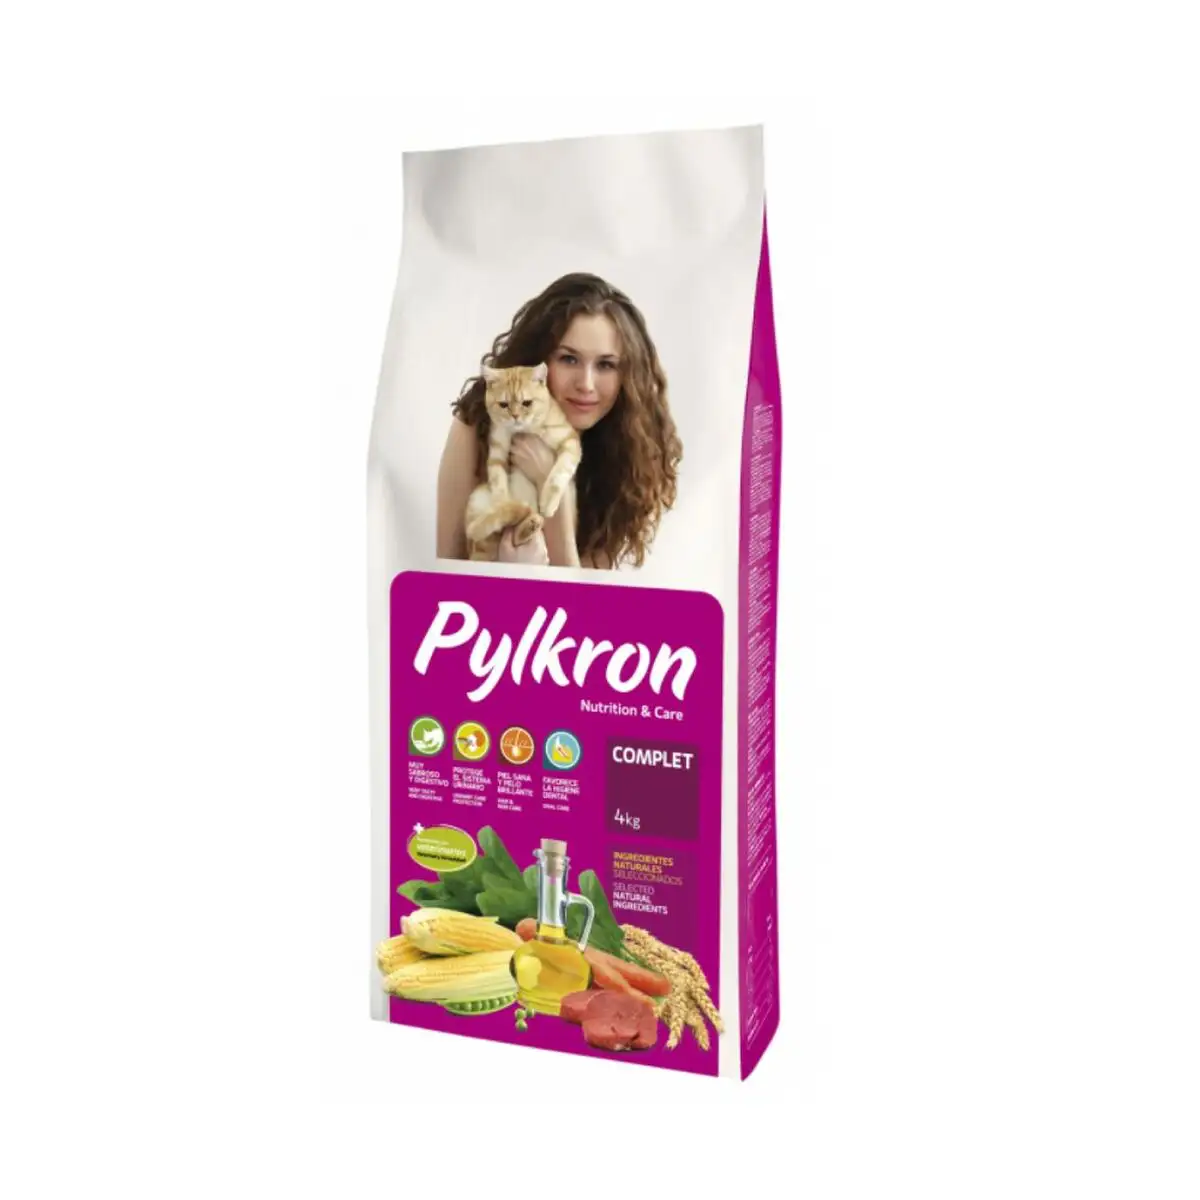 Aliments pour chat pylkron complet 4 kg _2677. Bienvenue chez DIAYTAR SENEGAL - Où Votre Shopping Prend Vie. Découvrez notre univers et dénichez des trésors qui ajoutent de la couleur à votre quotidien.